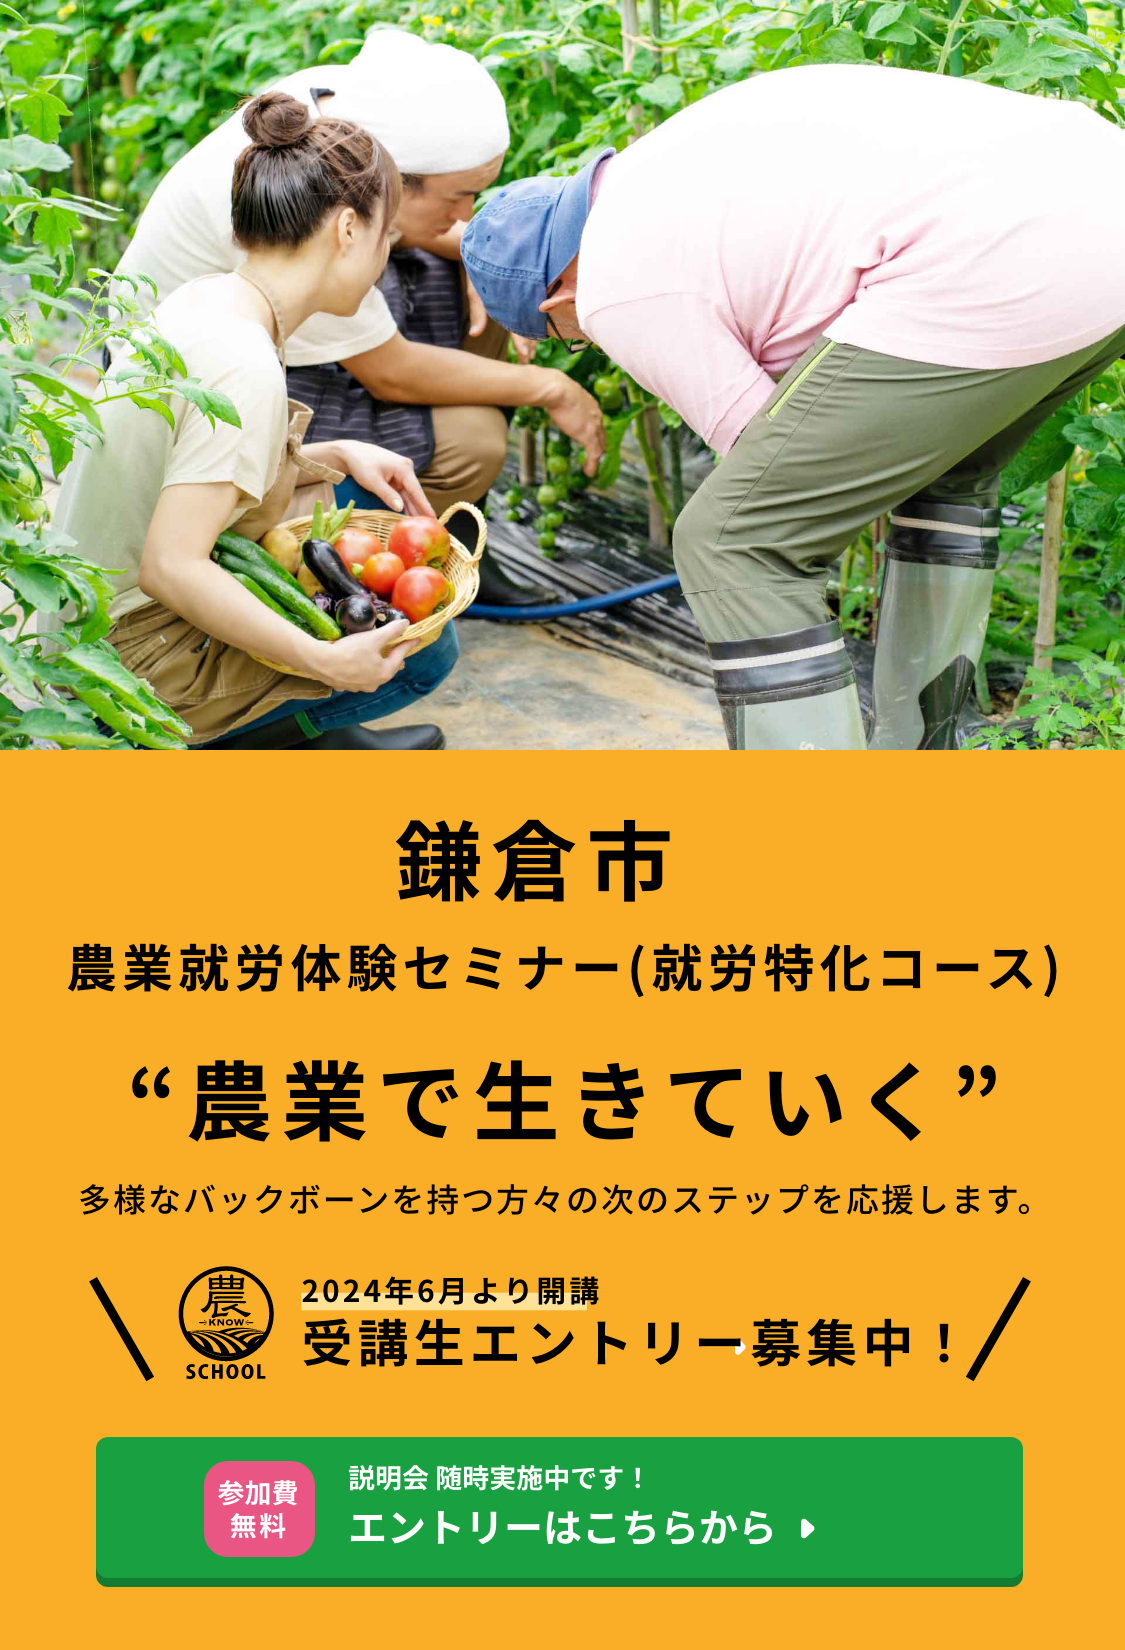 2024年6月より開講 鎌倉市農業就労体験セミナー(就労特化コース) 受講生エントリー募集中